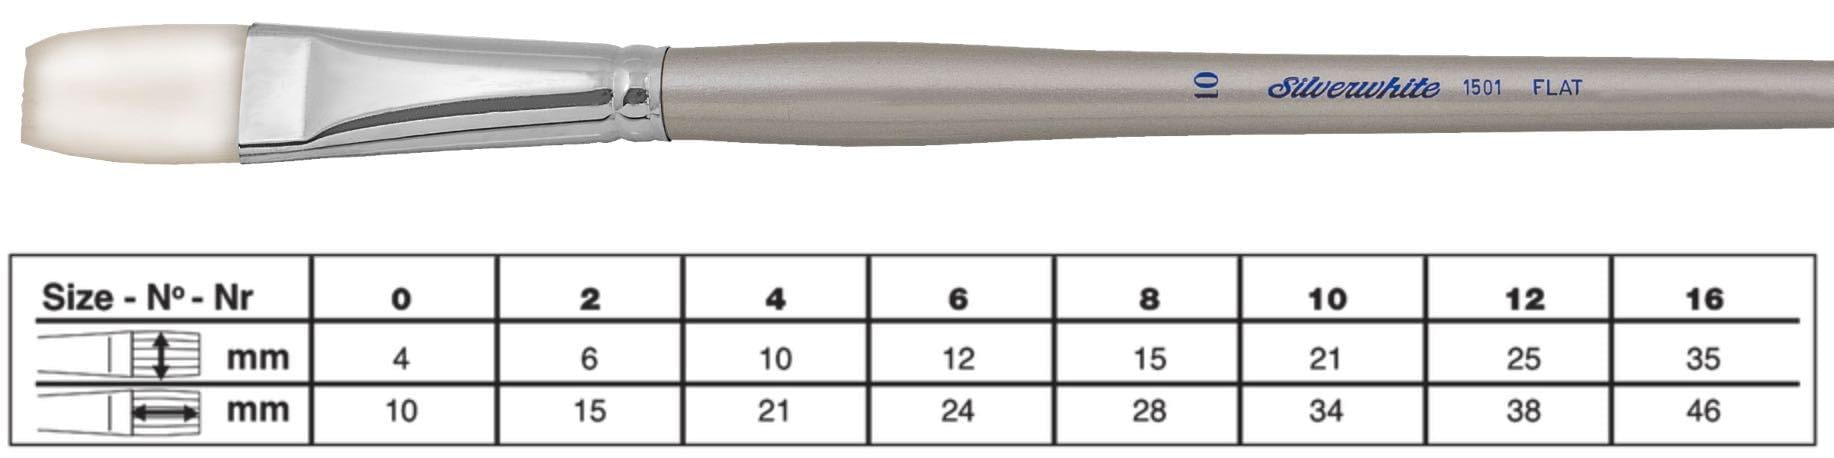 SILVER BRUSH SILVER BRUSH 2 (6mm x 15mm) Silver Brush 1501 Silverwhite Long Handle